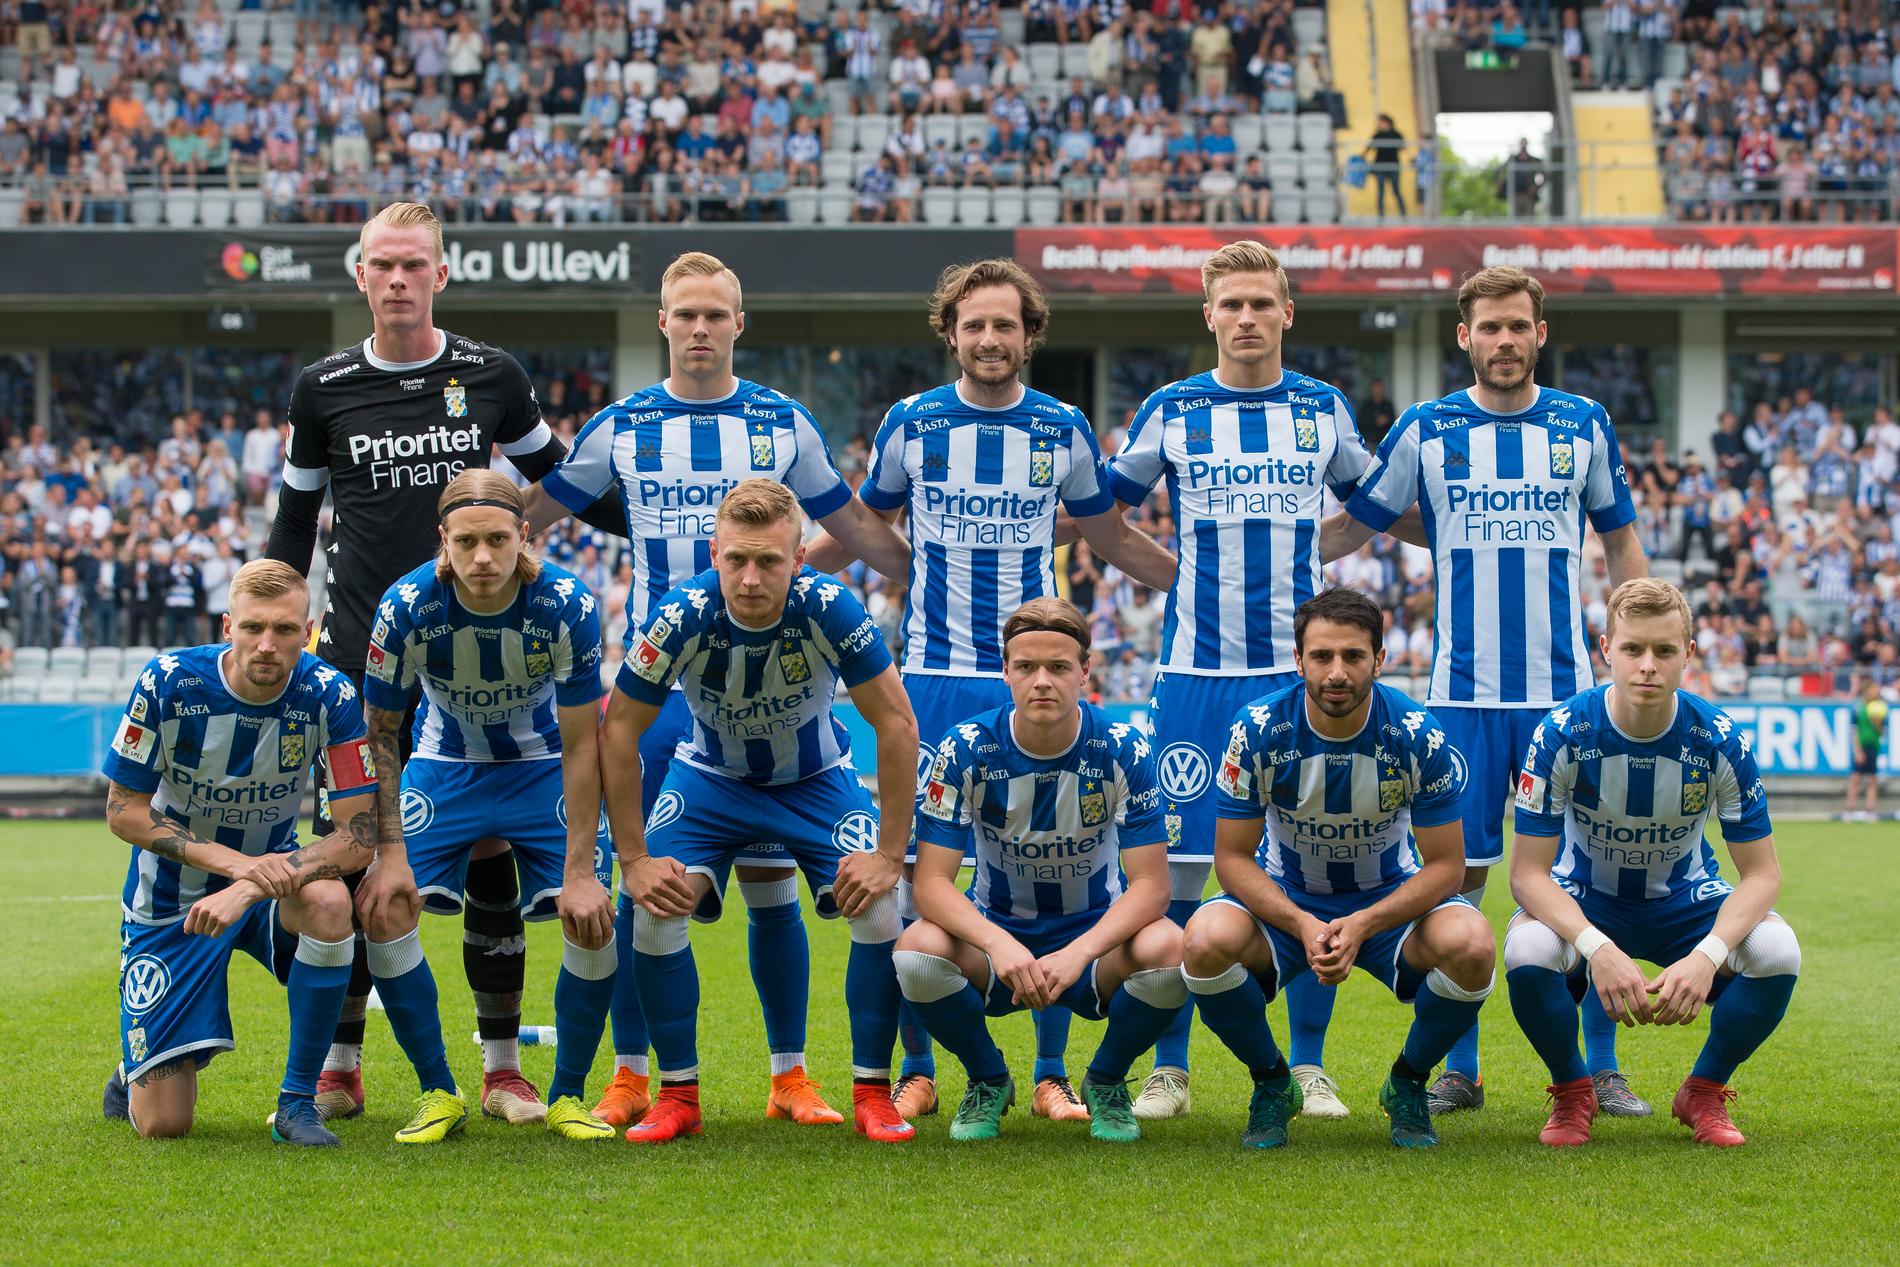 Trots jätteaffären med Pontus Dahlberg gjorde IFK bara 1,3 miljoner i vinst 2018.